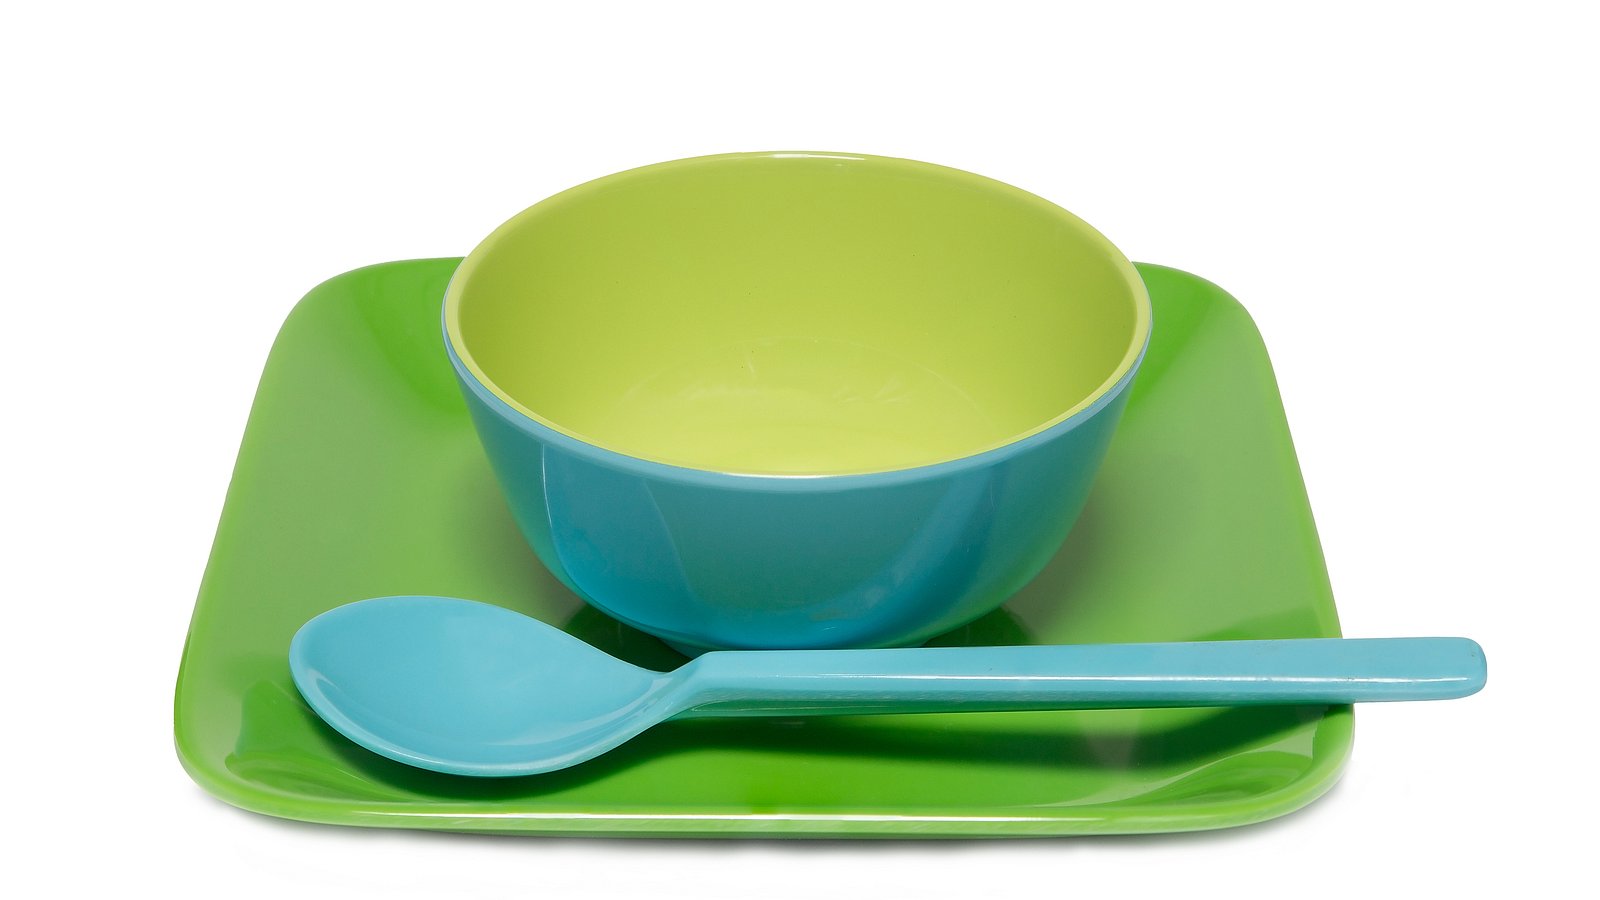 Melamin-Geschirr mit Teller, Schüssel und Löffel für kleine Kinder.